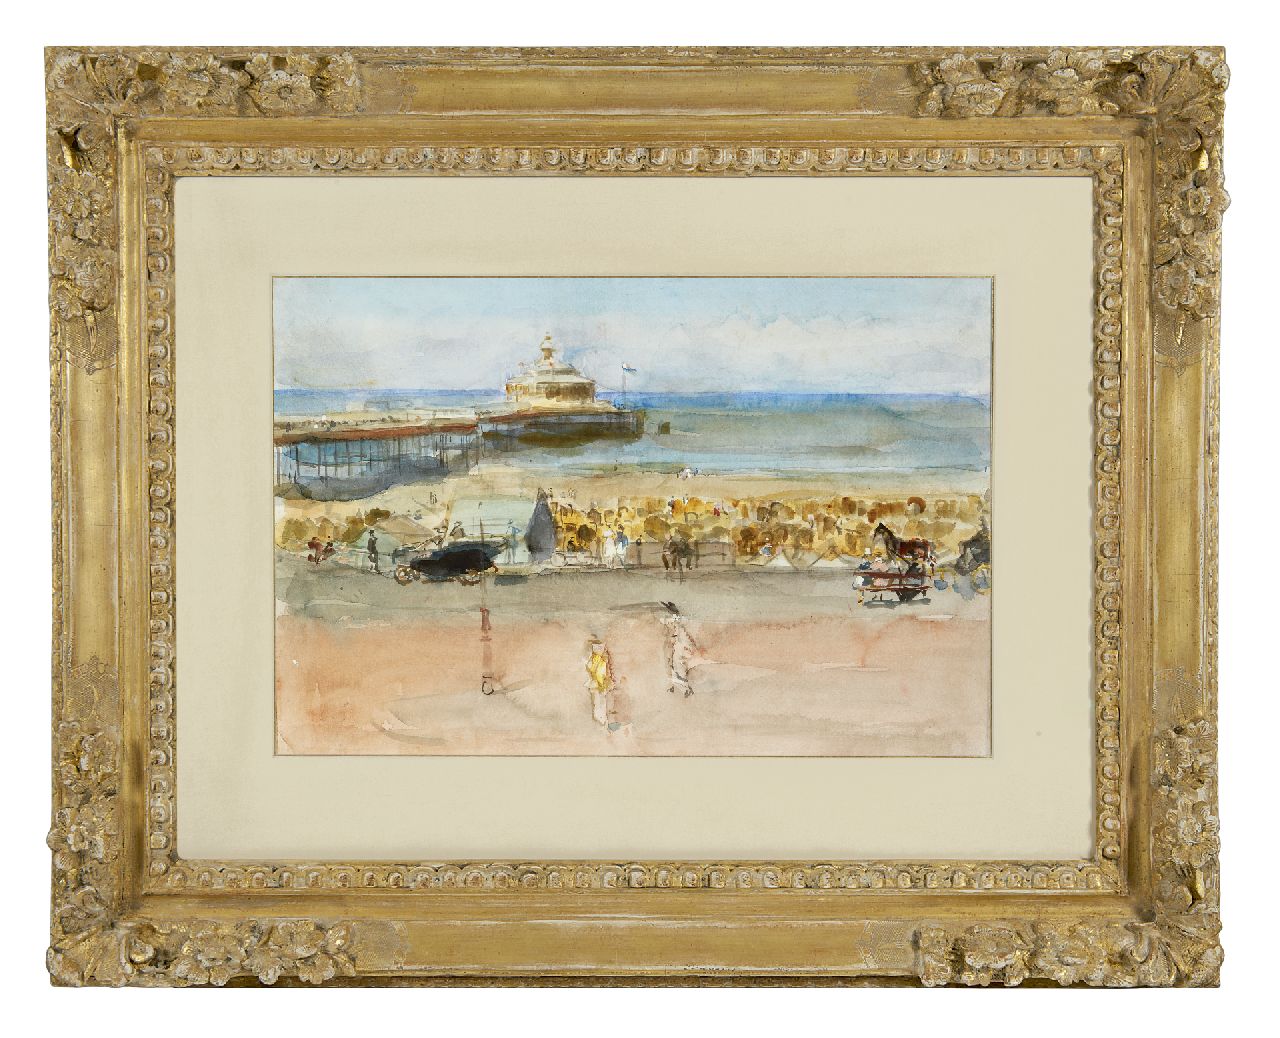 Israels I.L.  | 'Isaac' Lazarus Israels, Ein sonniger Tag auf der Strandpromenade von Scheveningen, Aquarell und Gouache auf Papier auf Holzfaserplatte 33,7 x 50,6 cm, zu datieren 1915-1919